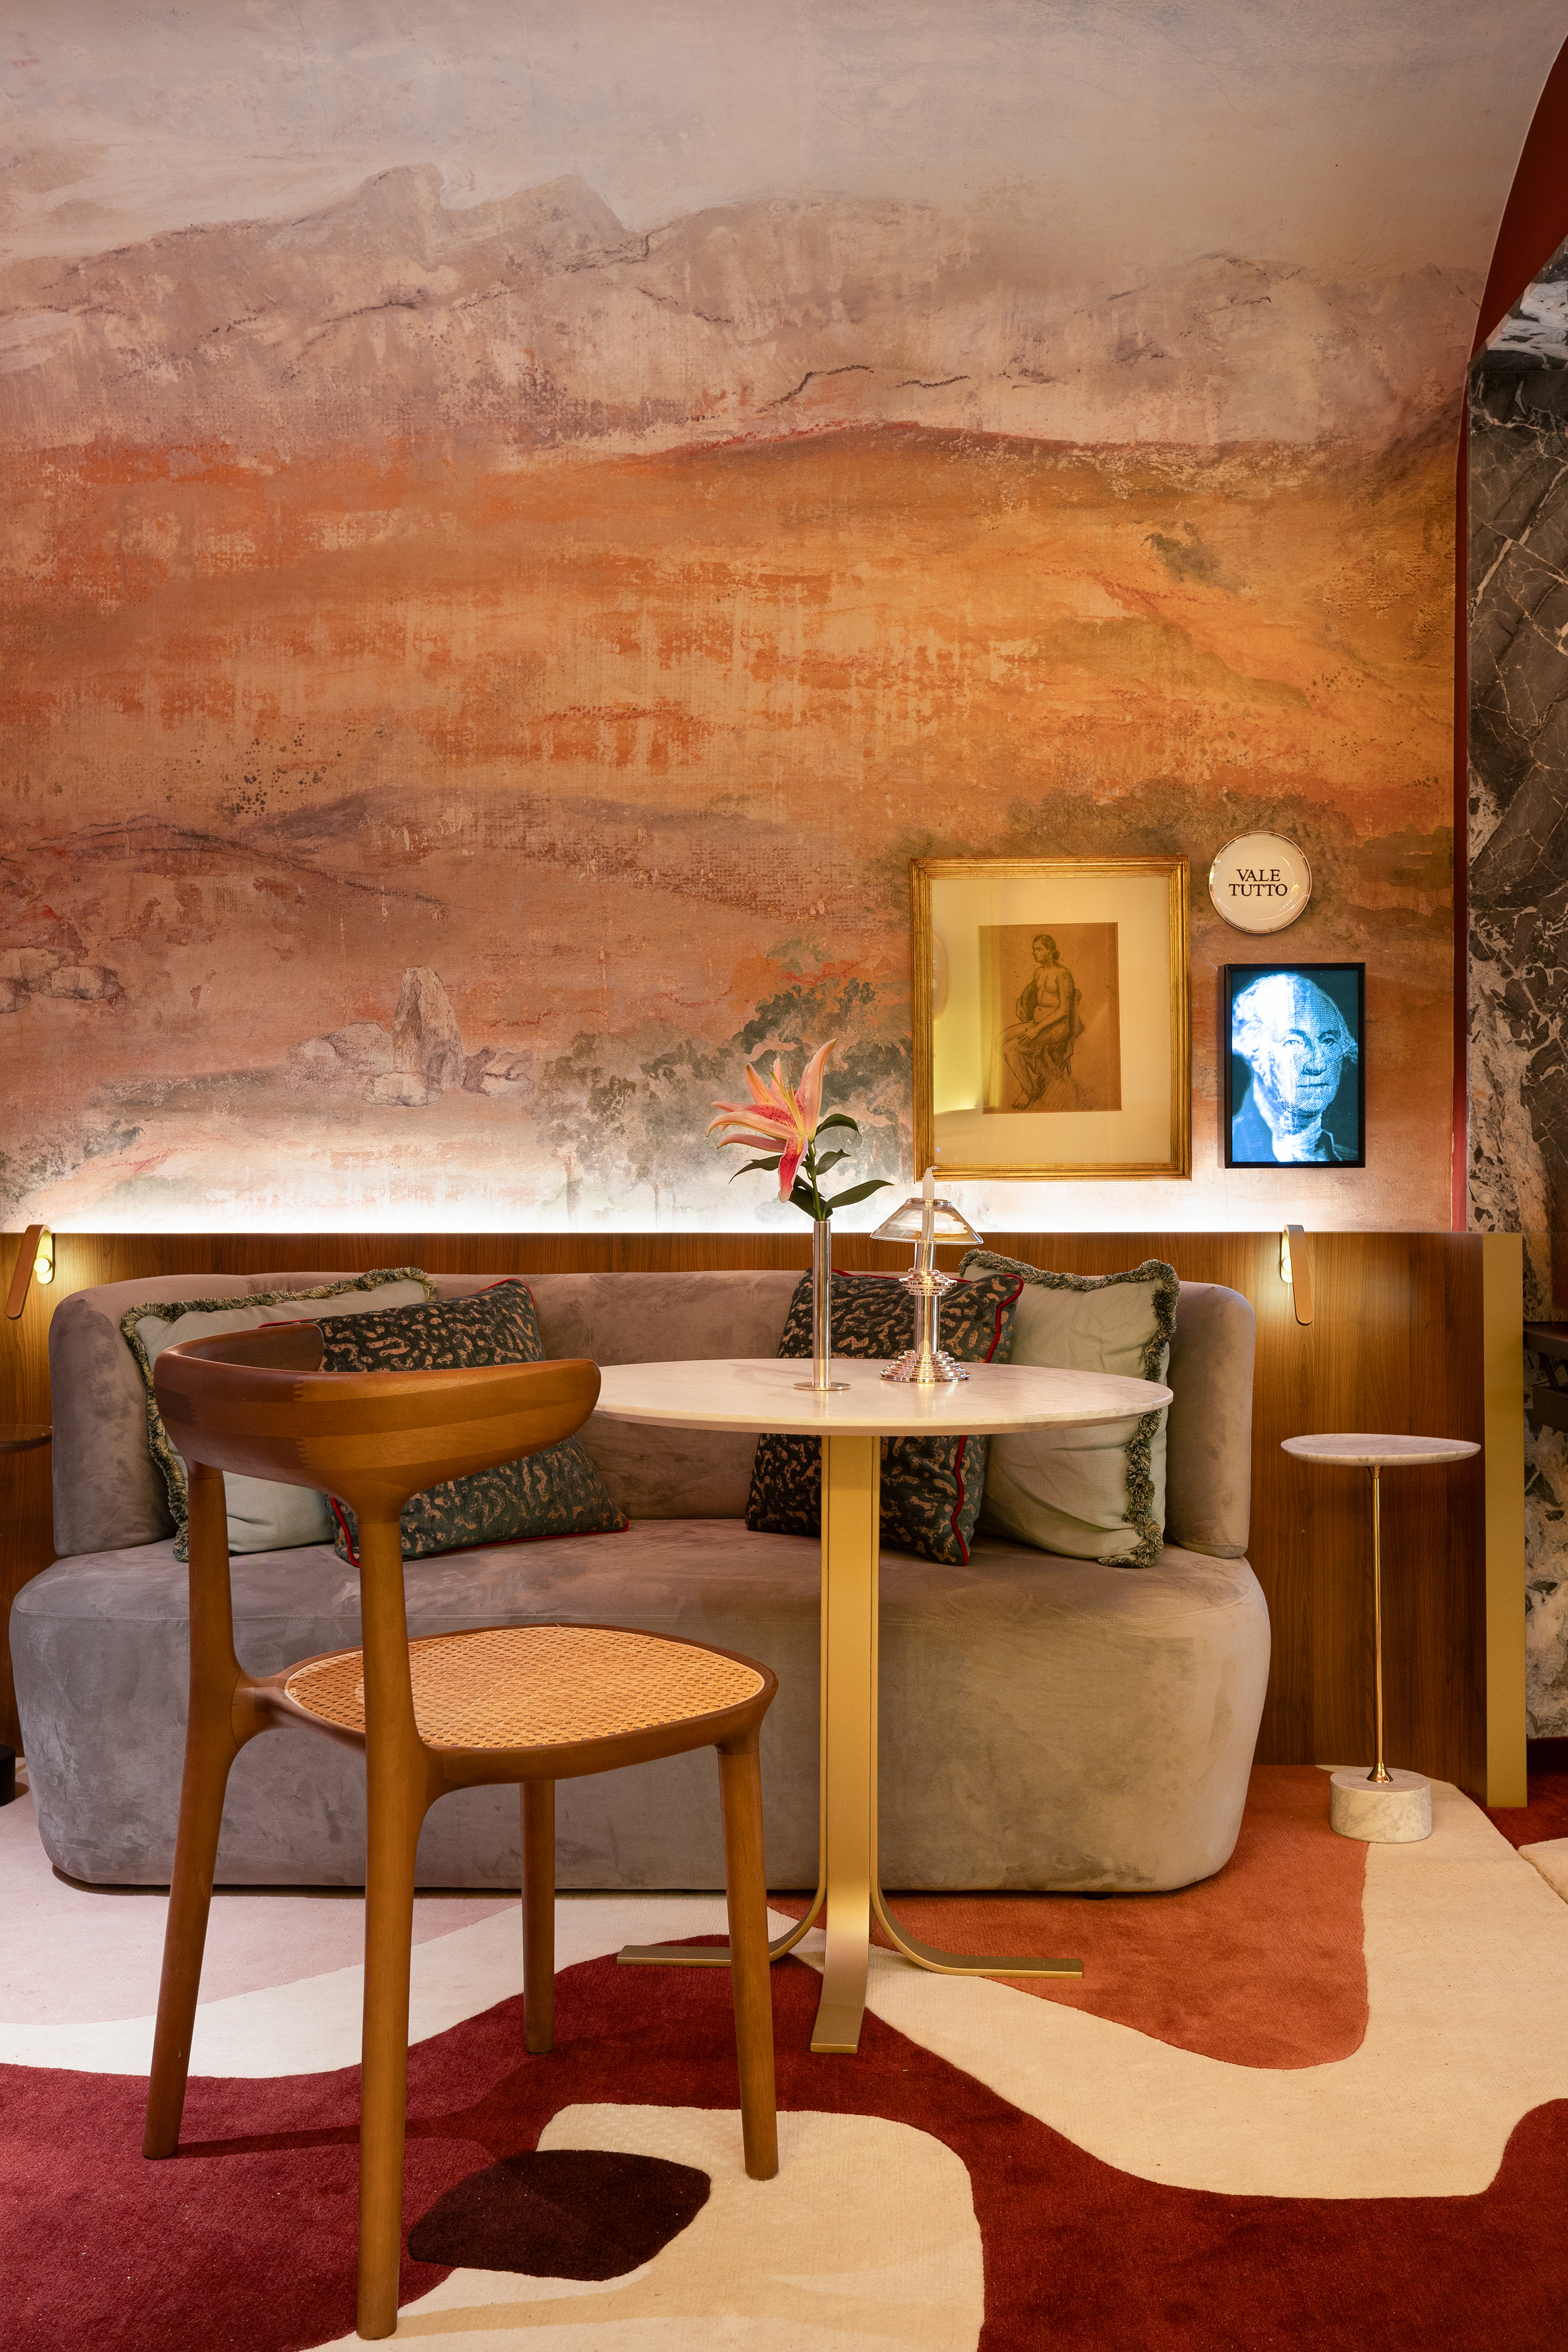 CASACOR São Paulo: bar une peças colecionadas ao redor do mundo. Projeto de Rodolfo Fontana. Na foto, bar com um mesa pequena